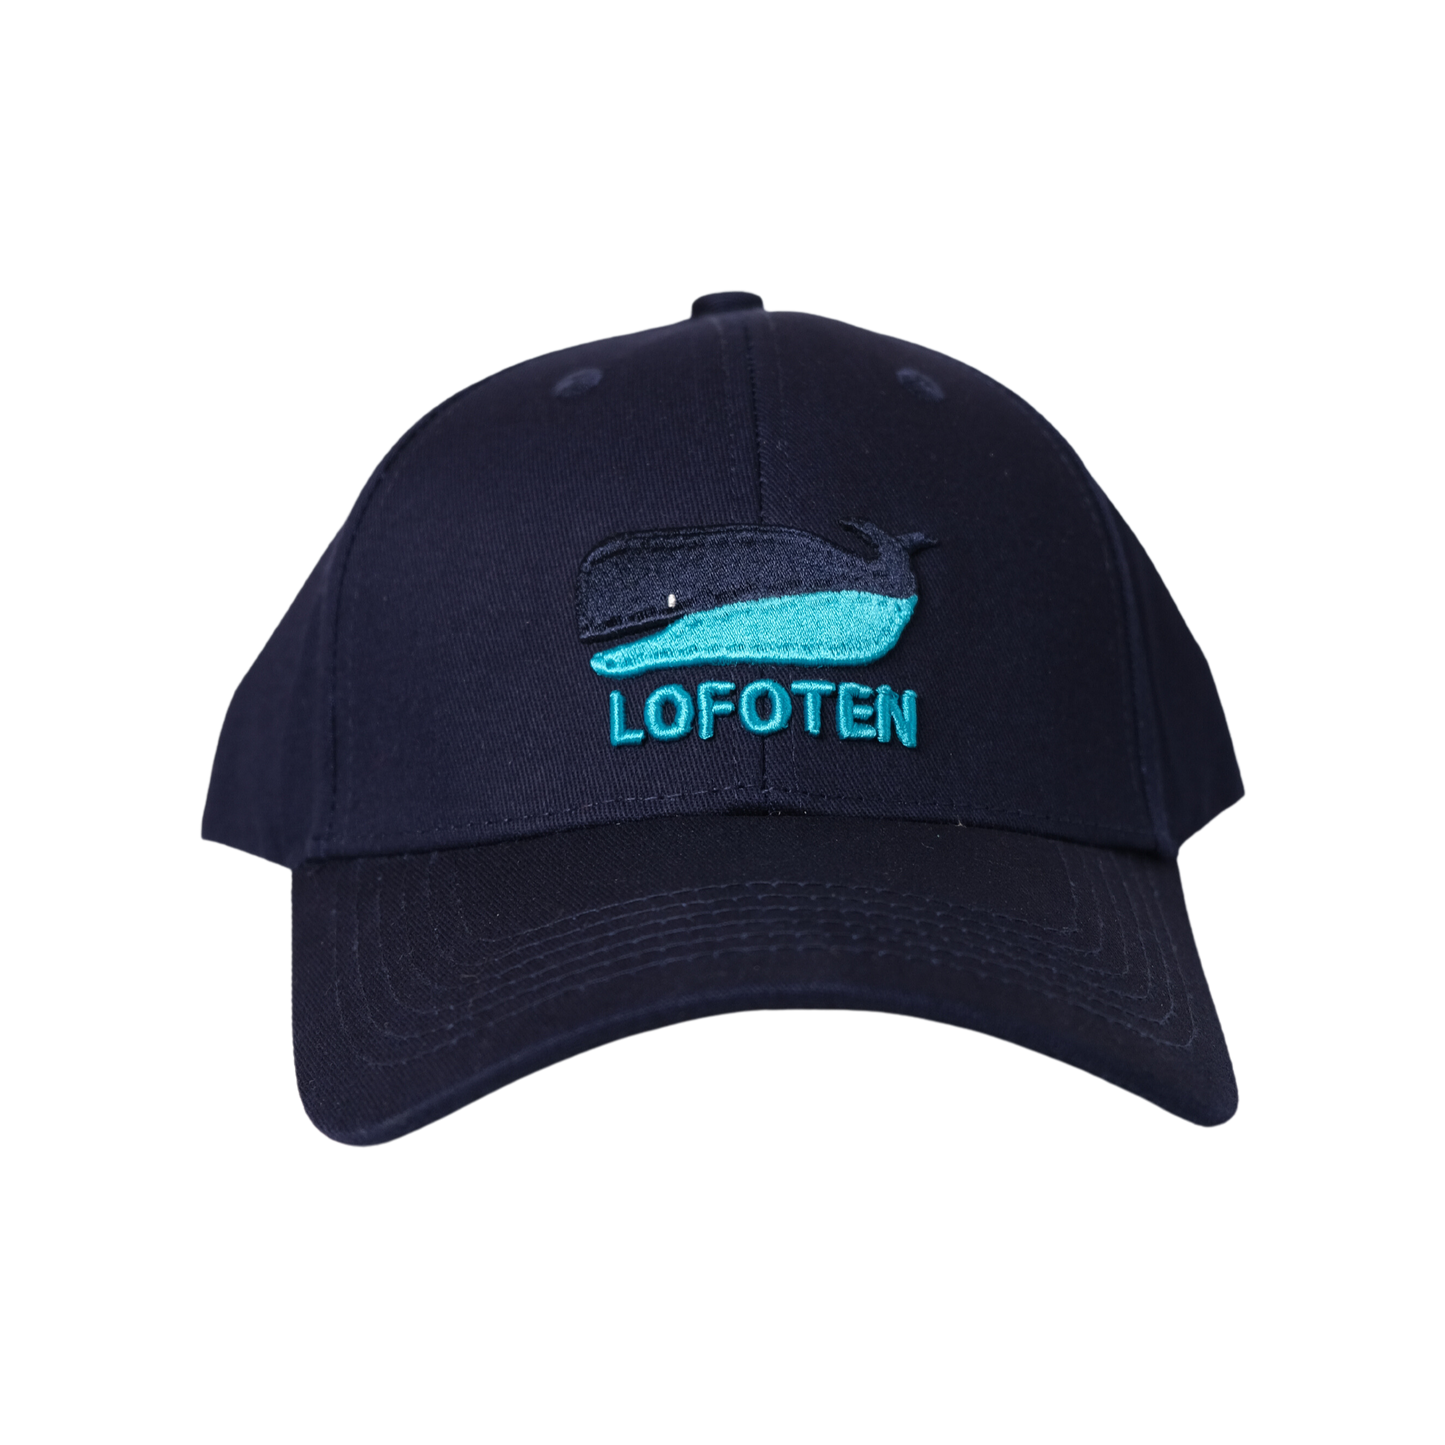 Lofoten whale cap